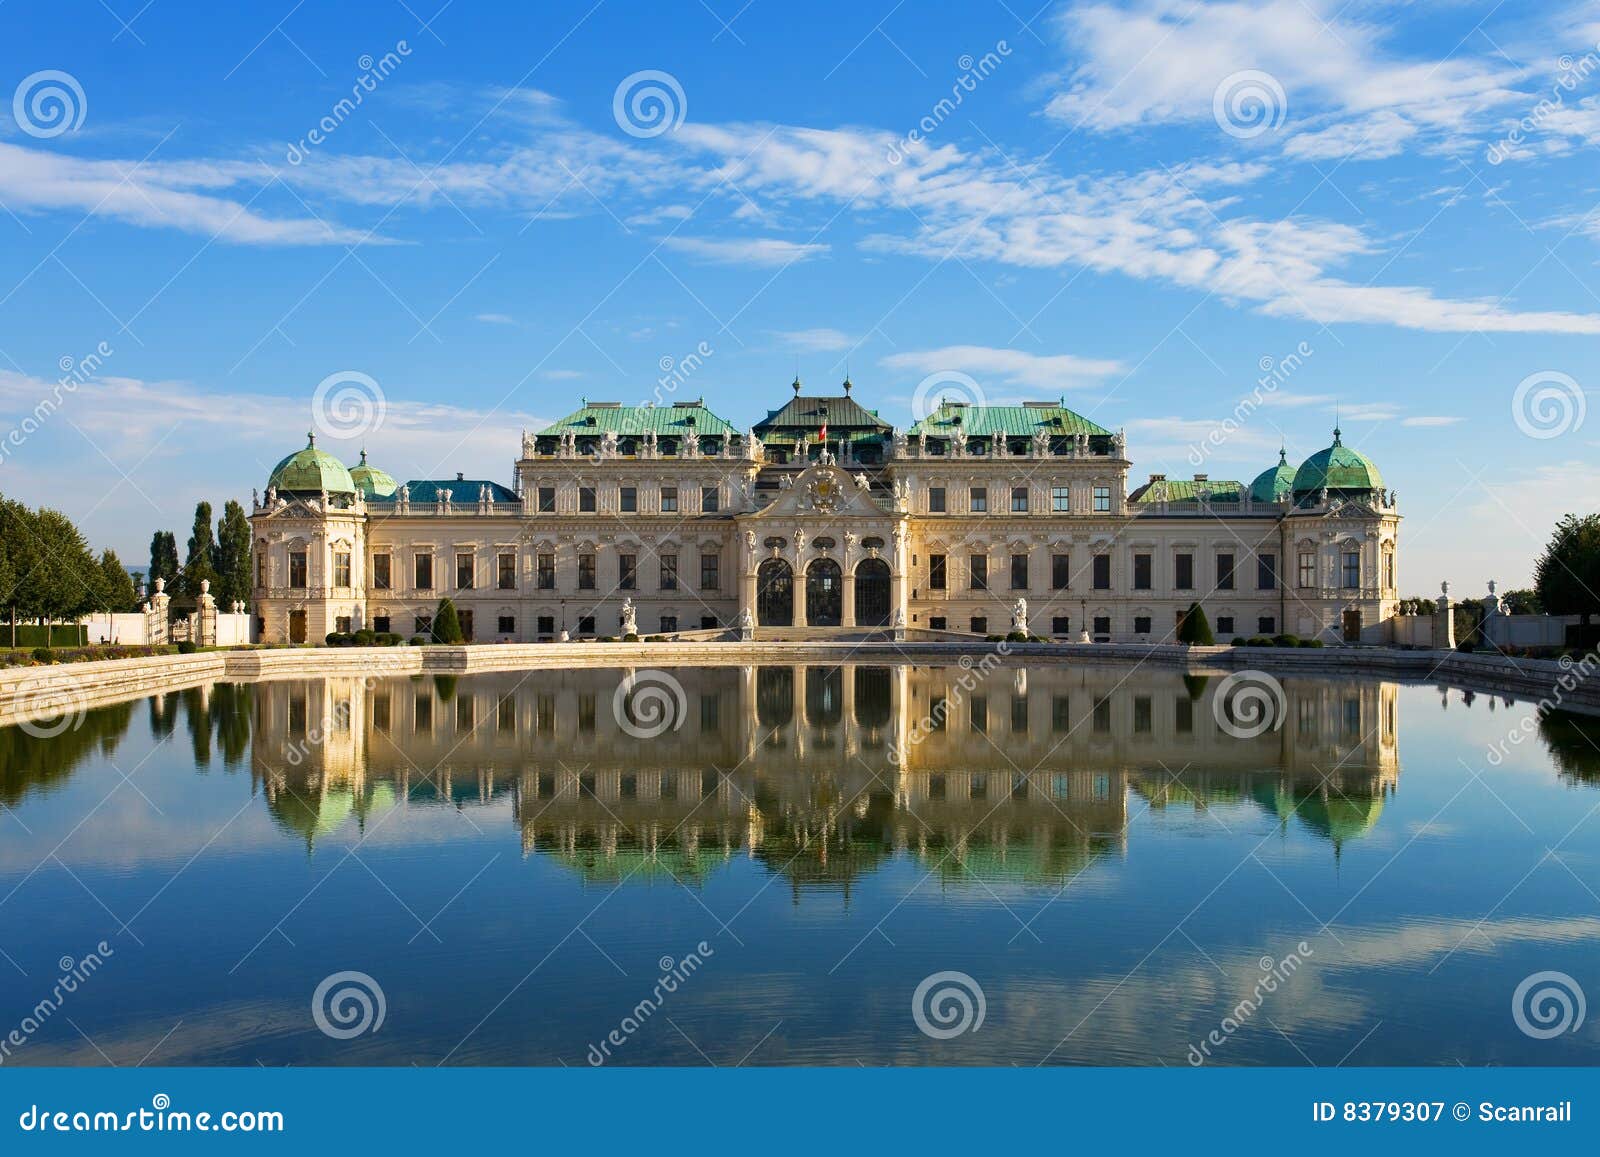 palace belvedere in vienna